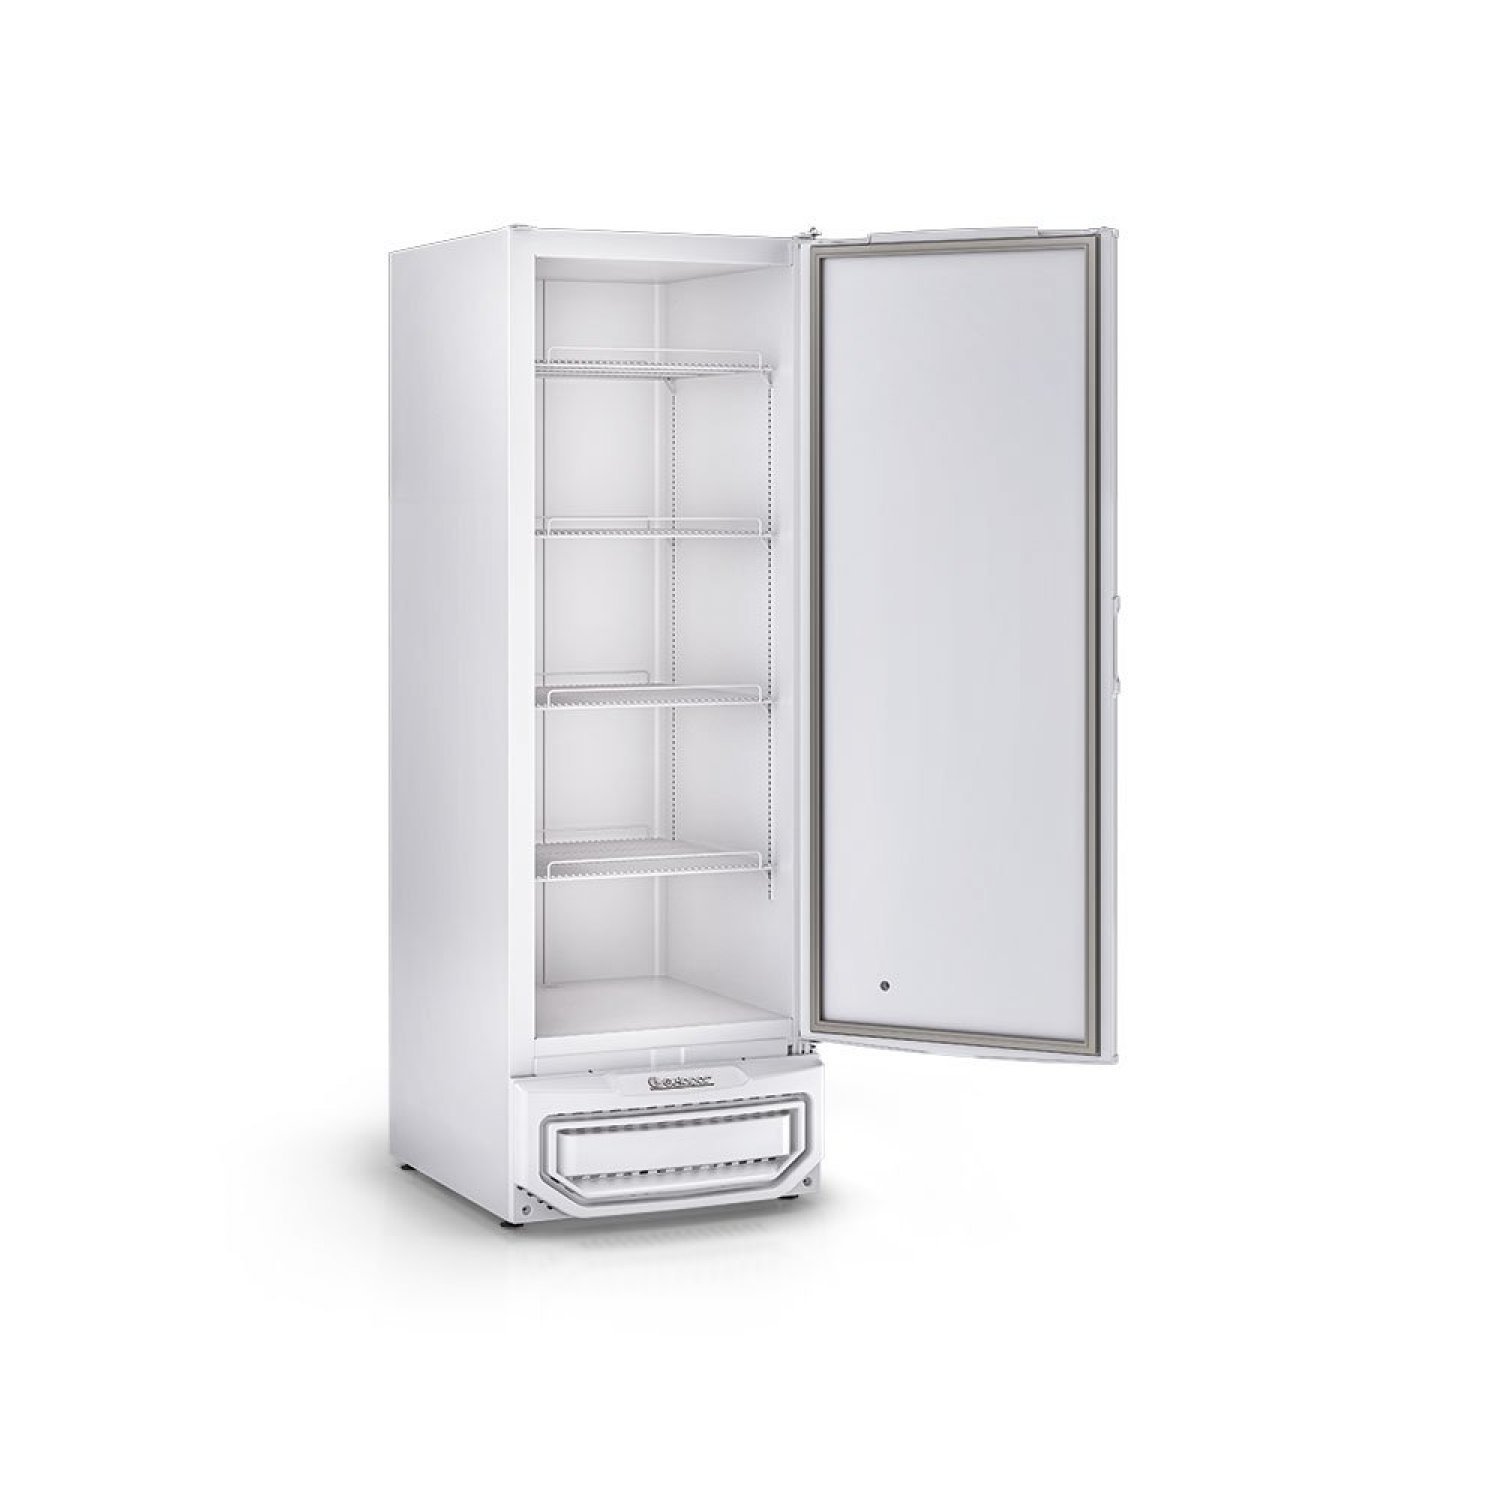 Freezer/Refrigerador Vertical 315 litros Porta Cega com Grades Tripla Ação GPC-31 BR Gelopar 127v - 3